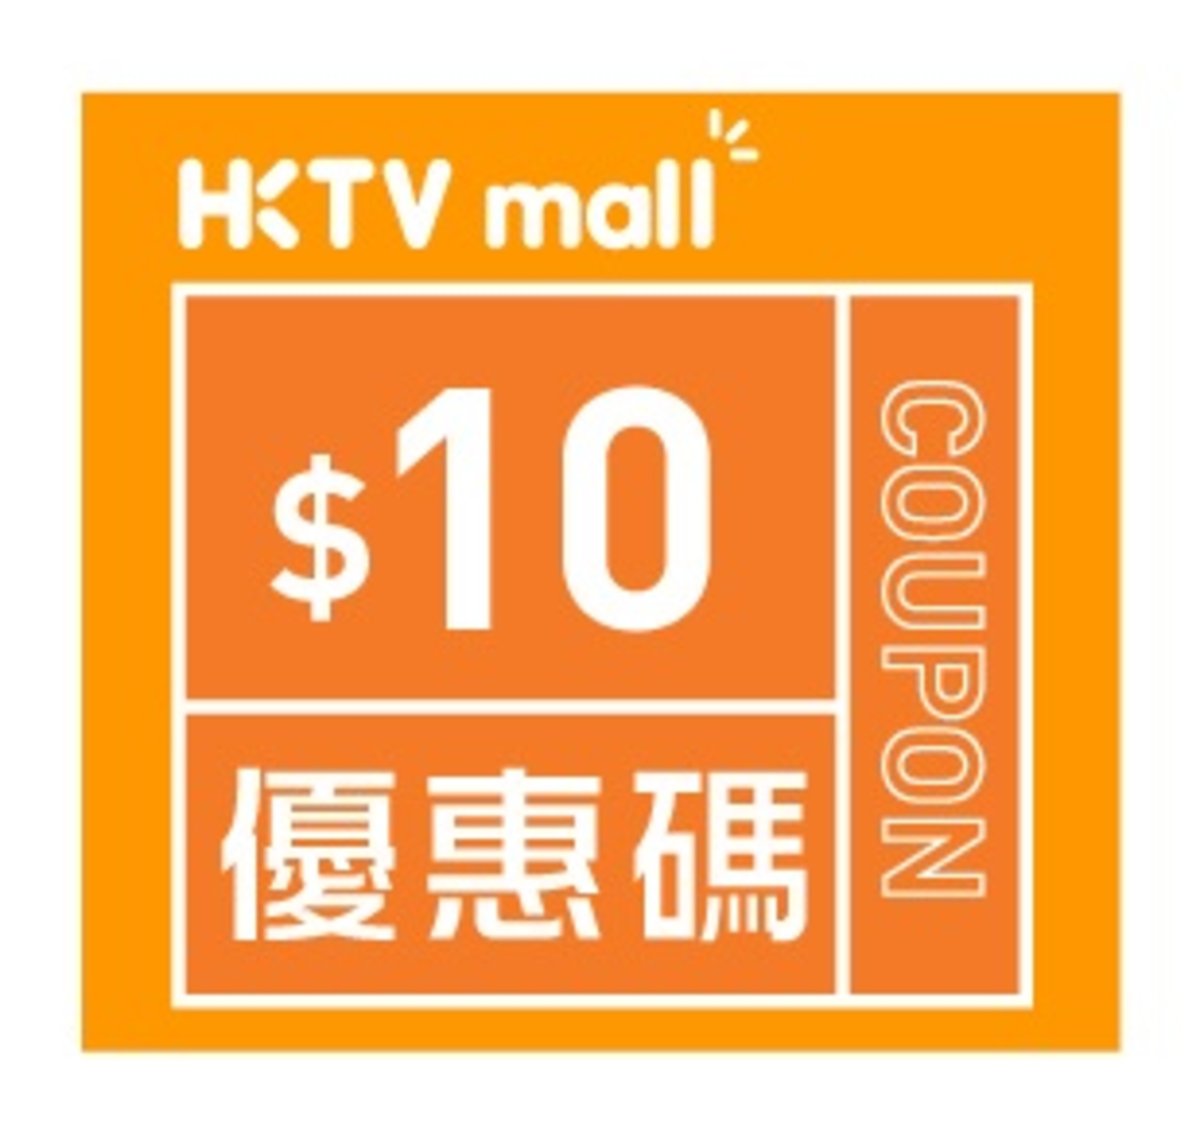 HKTVmall $10購物優惠碼 [有效日期： 2020.09.11 - 2020.10.31]